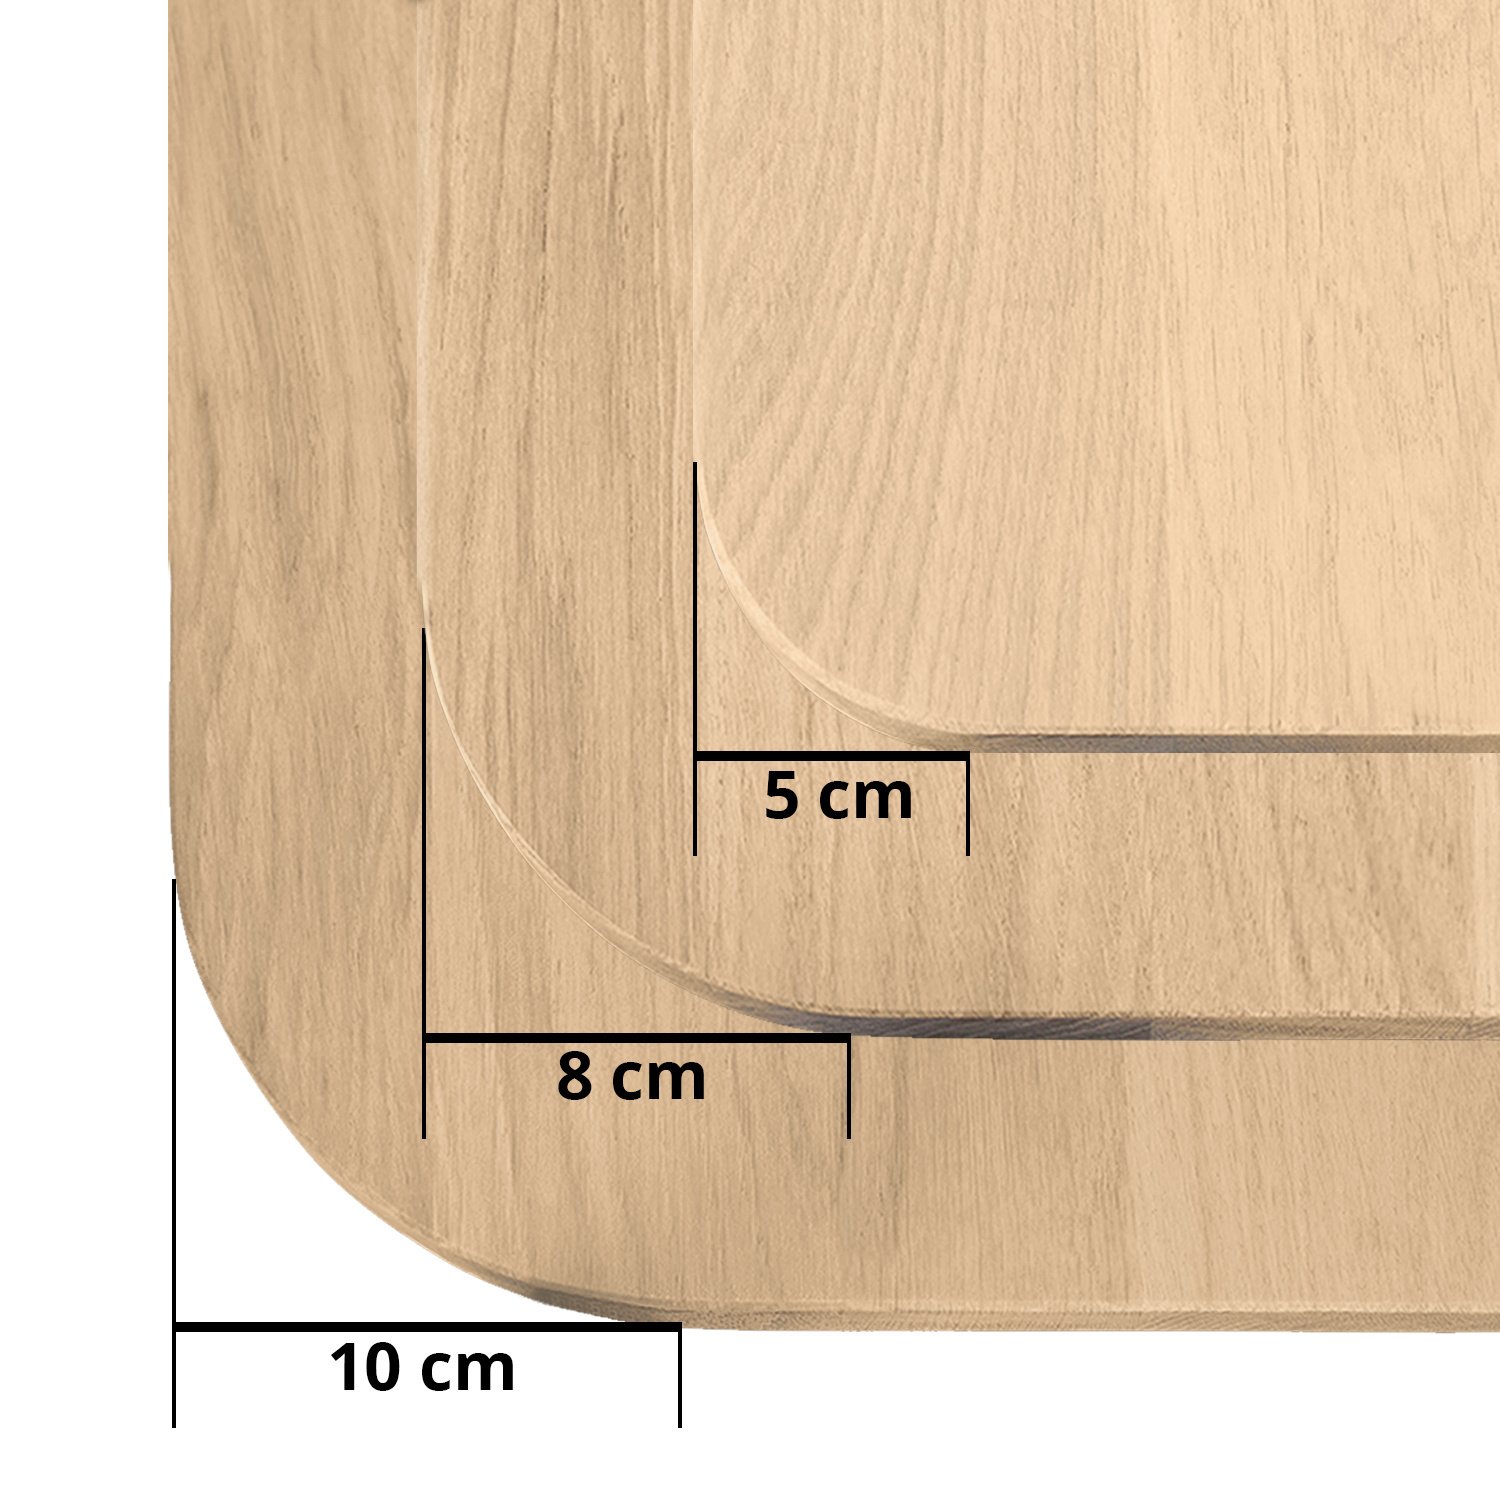  Eiken tafelblad met ronde hoeken op maat - 4 cm dik (1-laag) - foutvrij Europees eikenhout - met brede lamellen (circa 10-12 cm) - verlijmd kd 8-12% - 50-120x50-248 cm